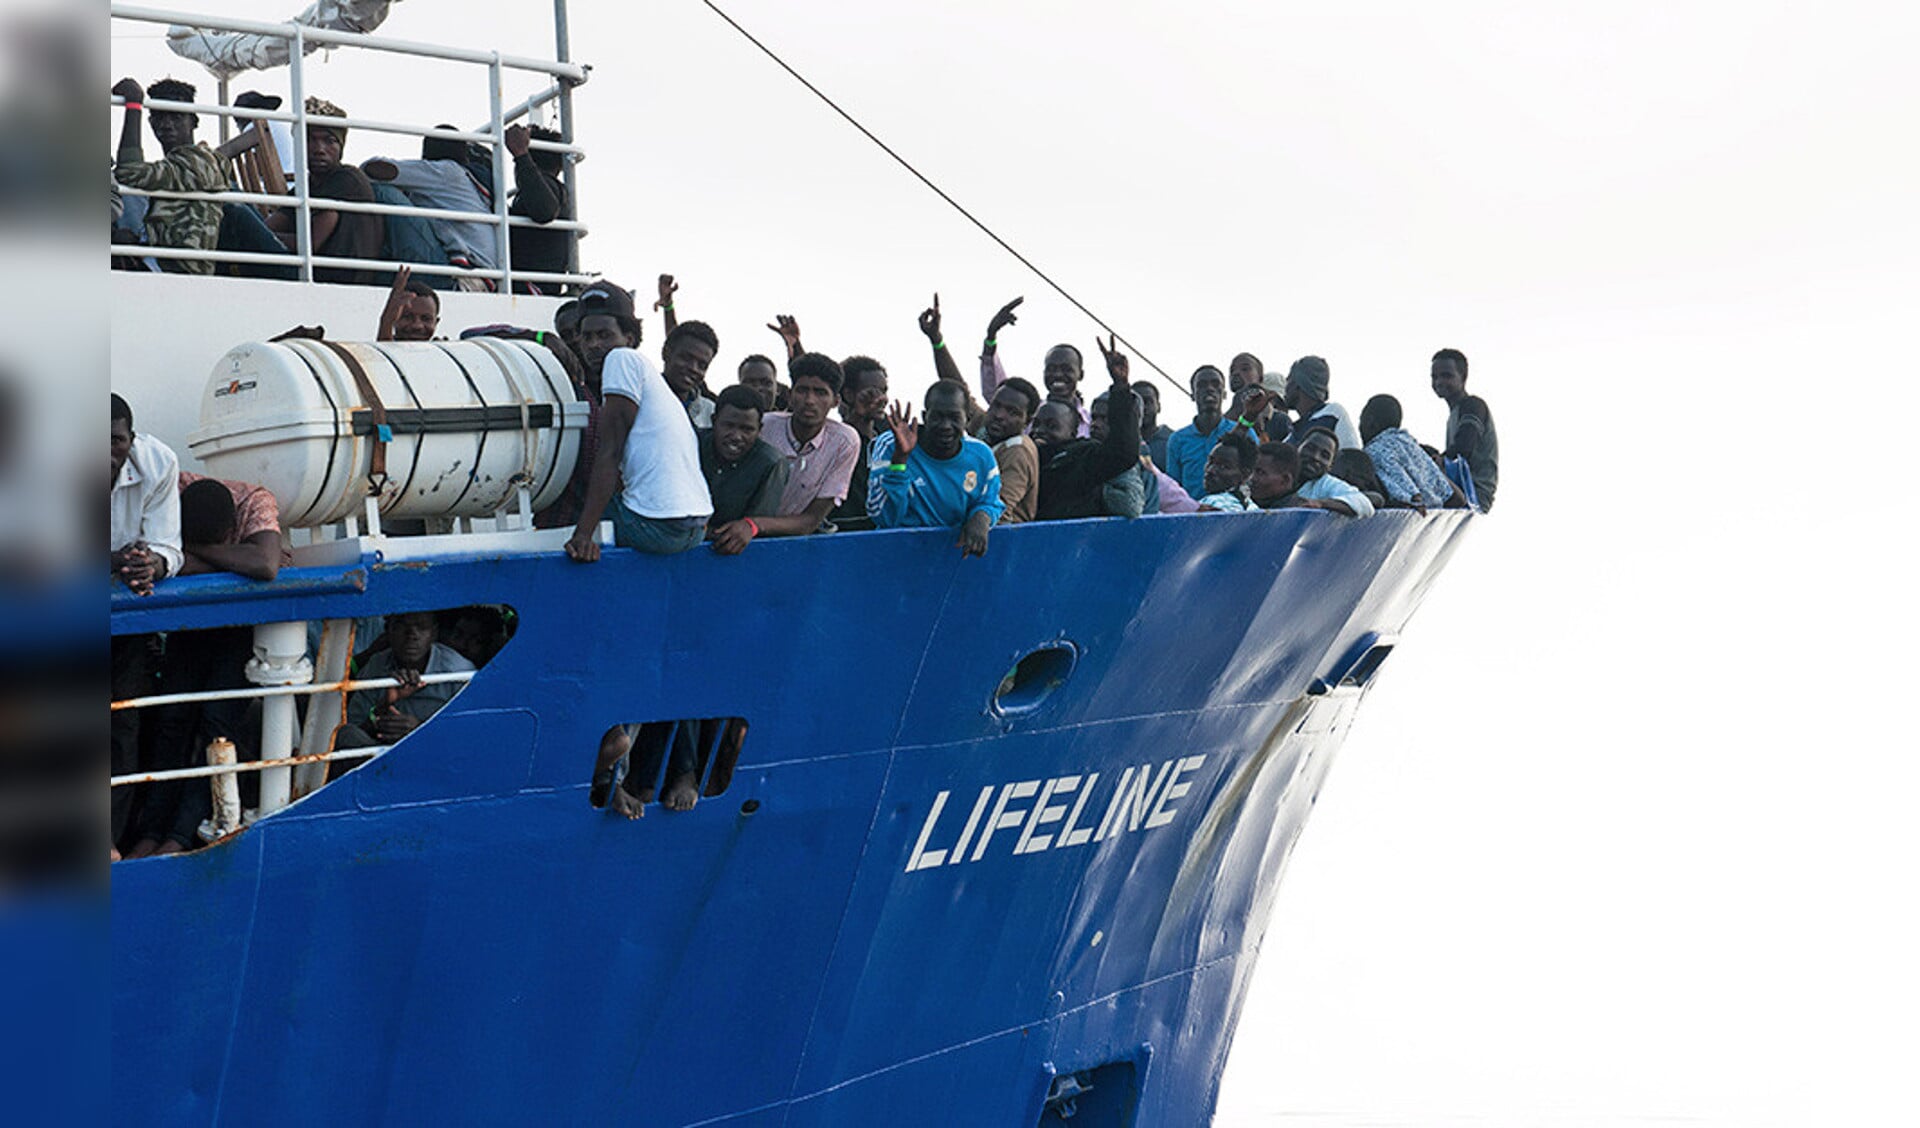 Op het voordek van de Lifeline staan migranten die uit de internationale wateren van de Middellandse Zee zijn gered.